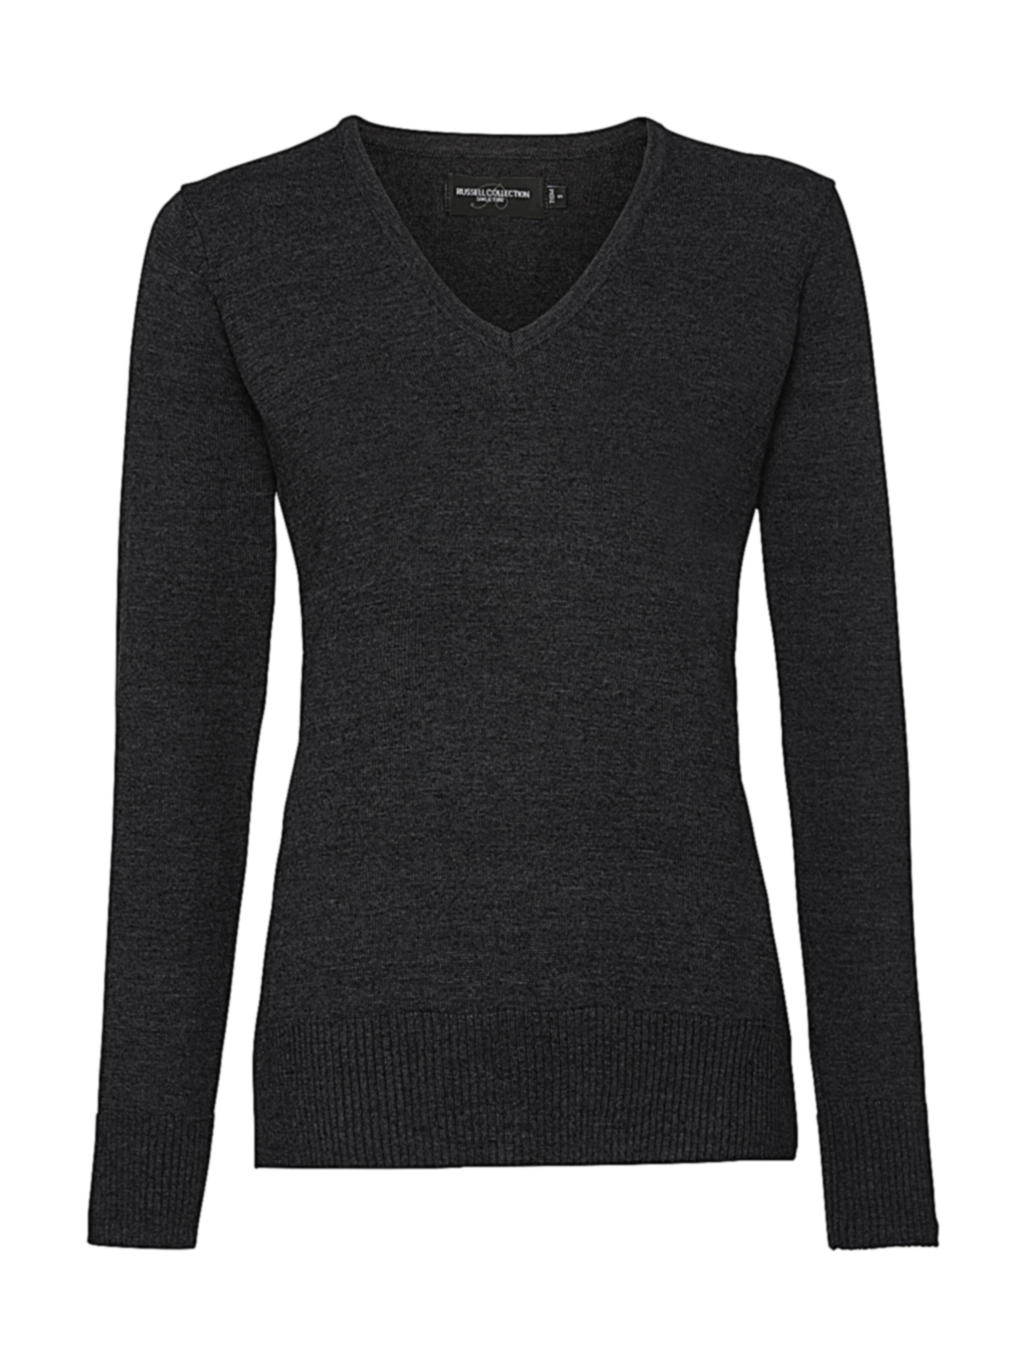 Ladies’ V-Neck Knitted Pullover zum Besticken und Bedrucken in der Farbe Charcoal Marl mit Ihren Logo, Schriftzug oder Motiv.